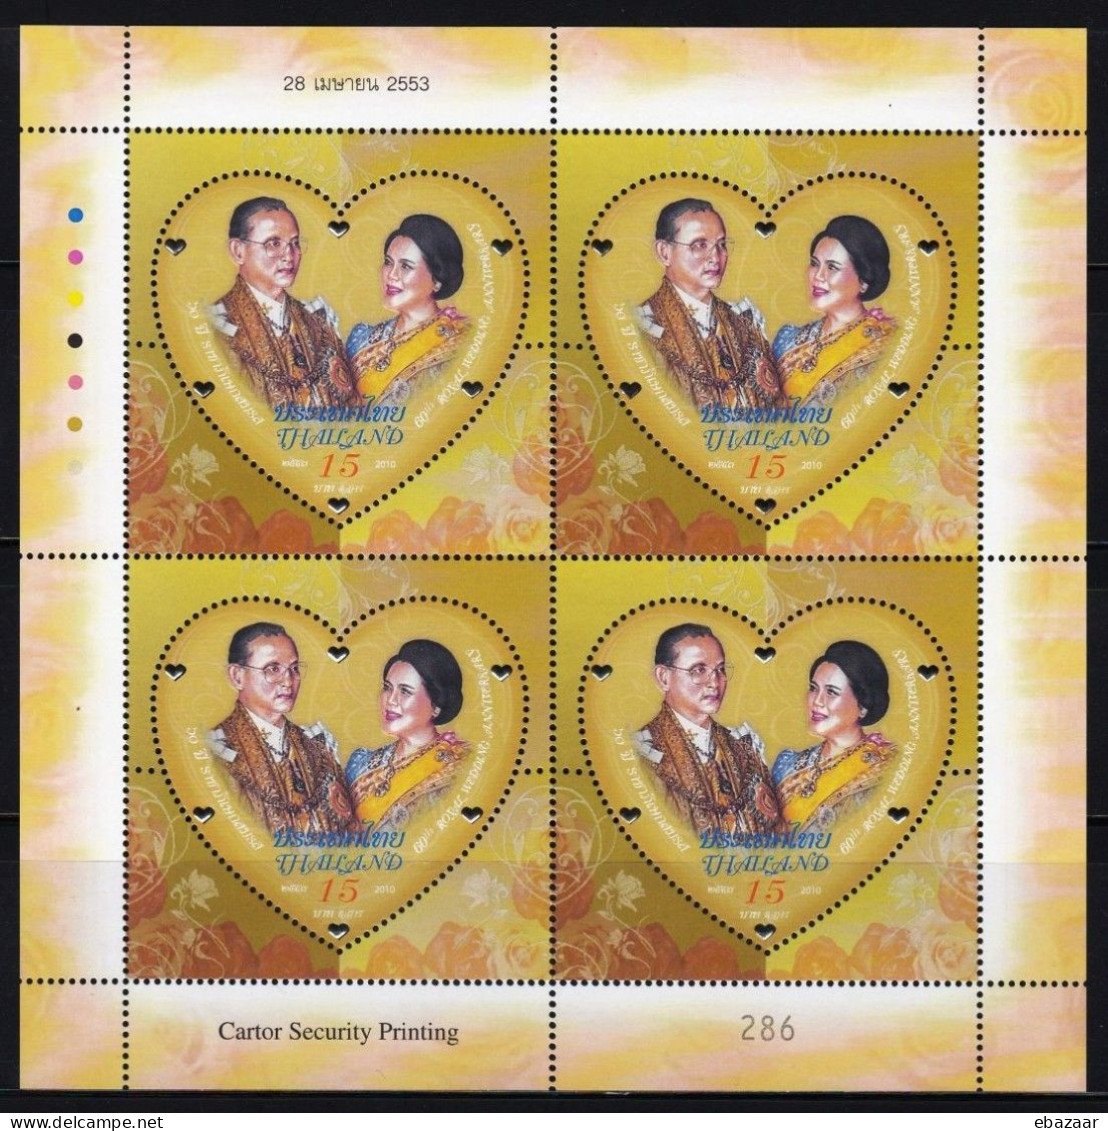 2010 Thailand Bangkok 60th Royal Wedding Anniversary 2 Sets Stamps Sheets MNH + FREE GIFT - Thaïlande